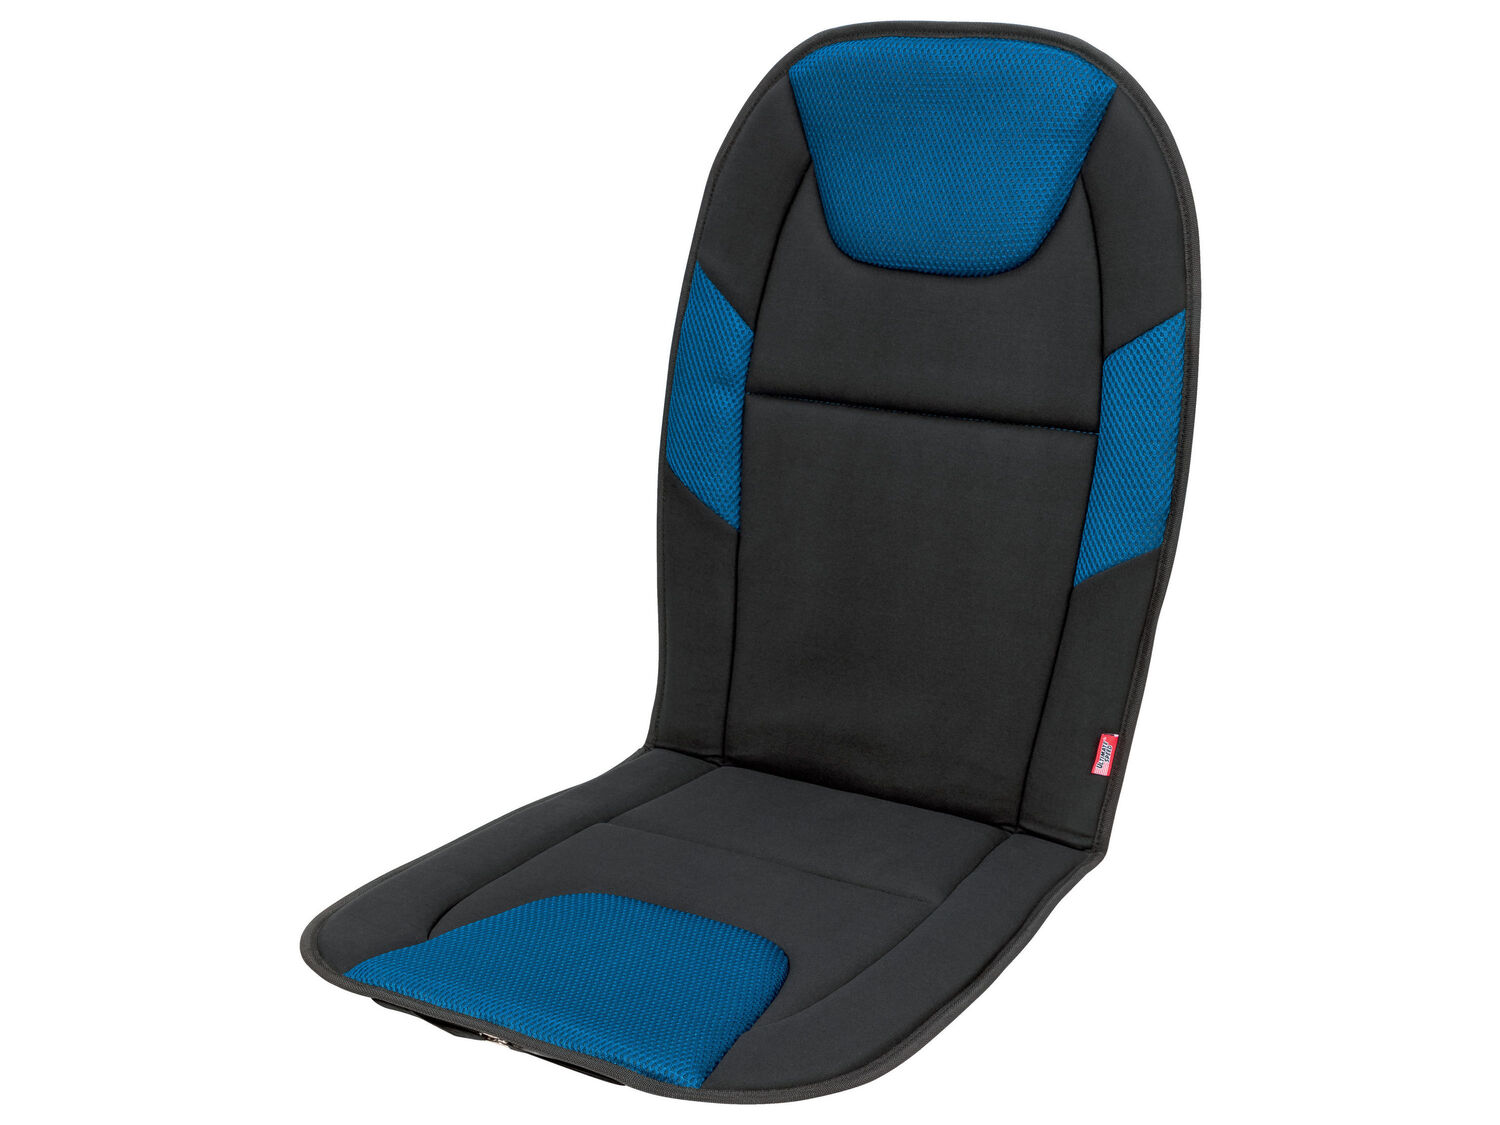 Nakładka na fotel samochodowy Ultimate Speed, cena 5,00 PLN 
różne wzory
Opis

- ...